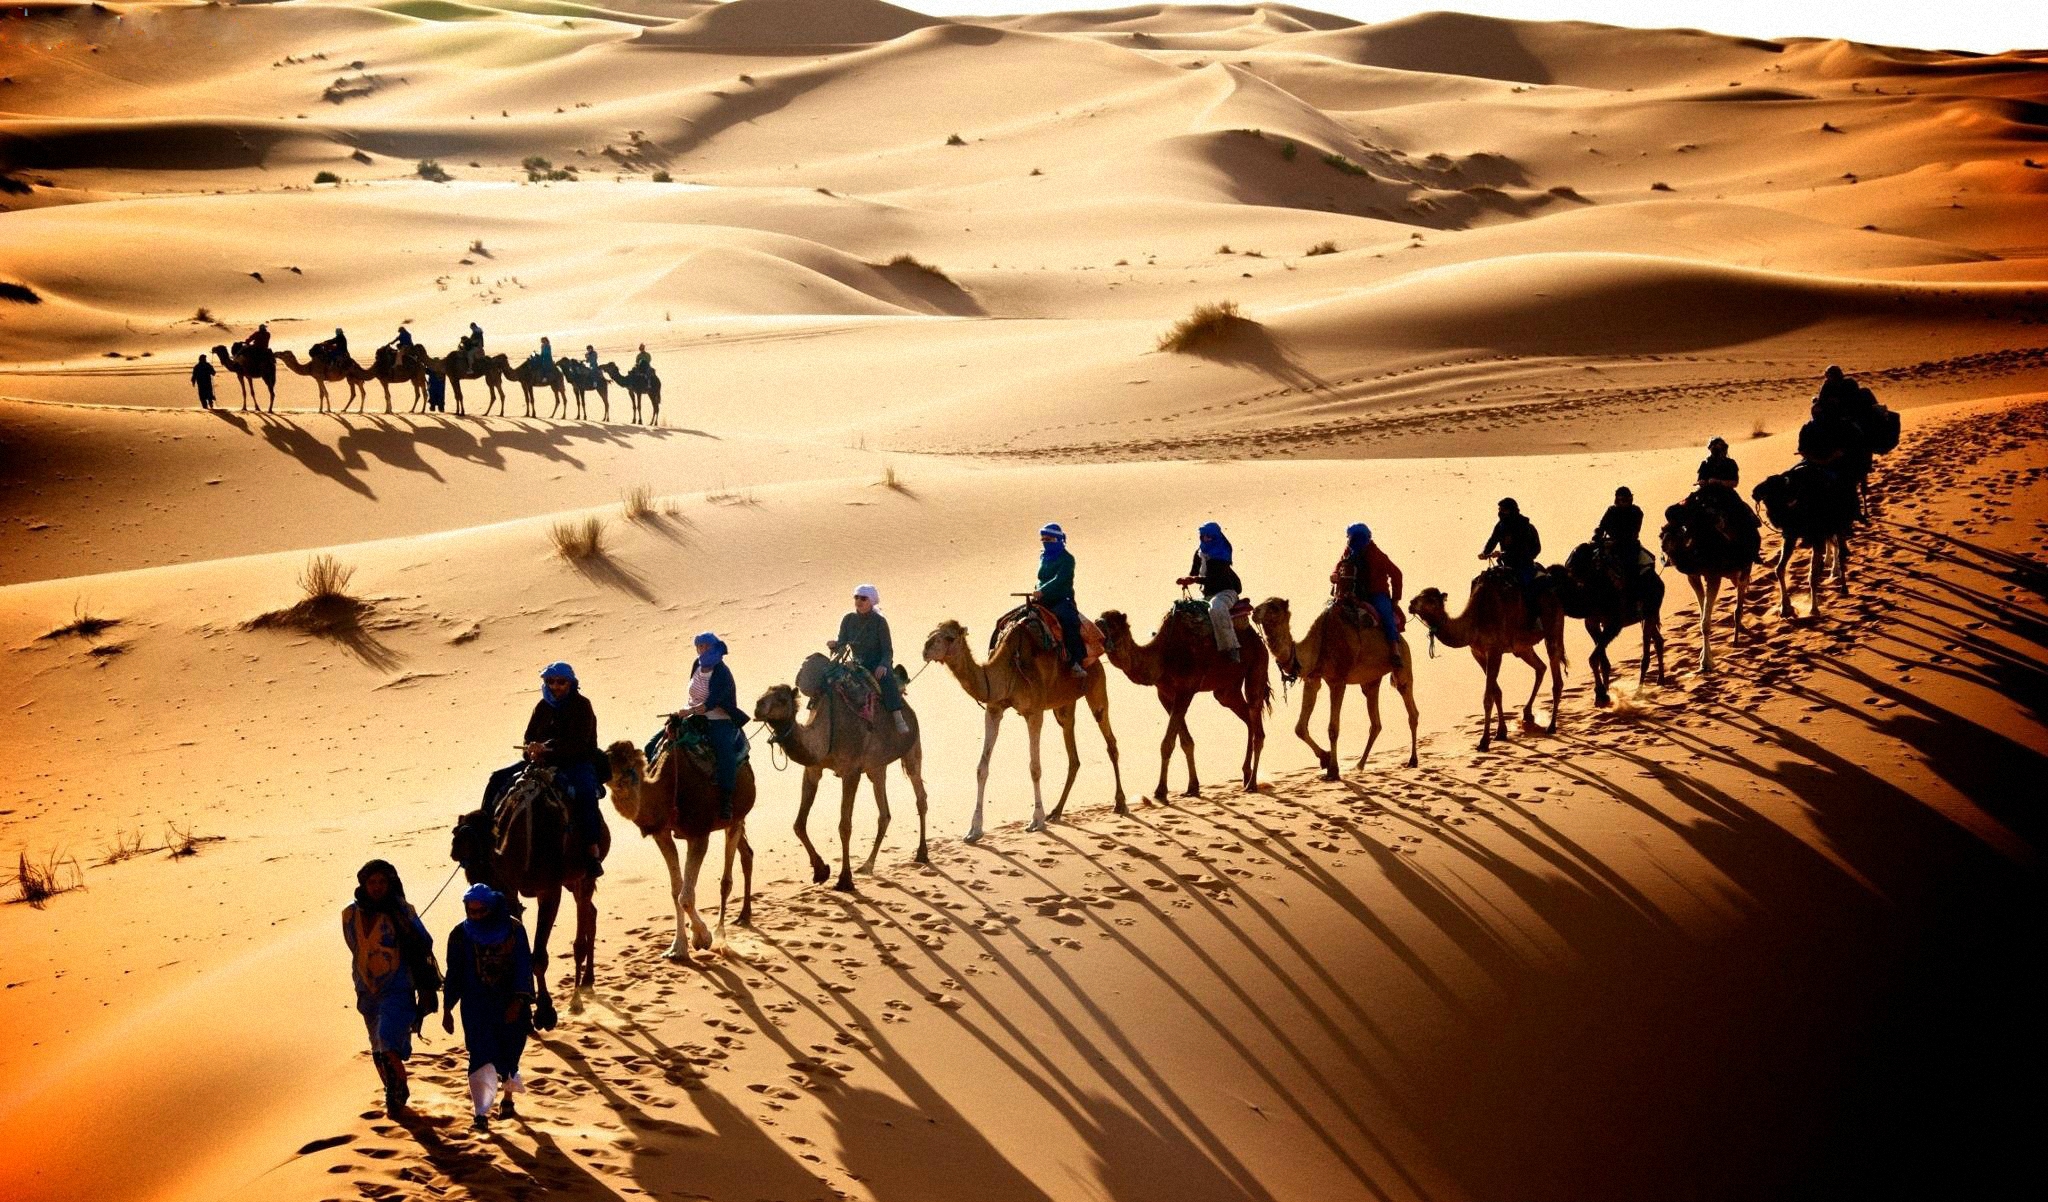 Далекий караван. Верблюд Караван шелковый путь. Великий шелковый путь Караван. Караван верблюдов в пустыне.